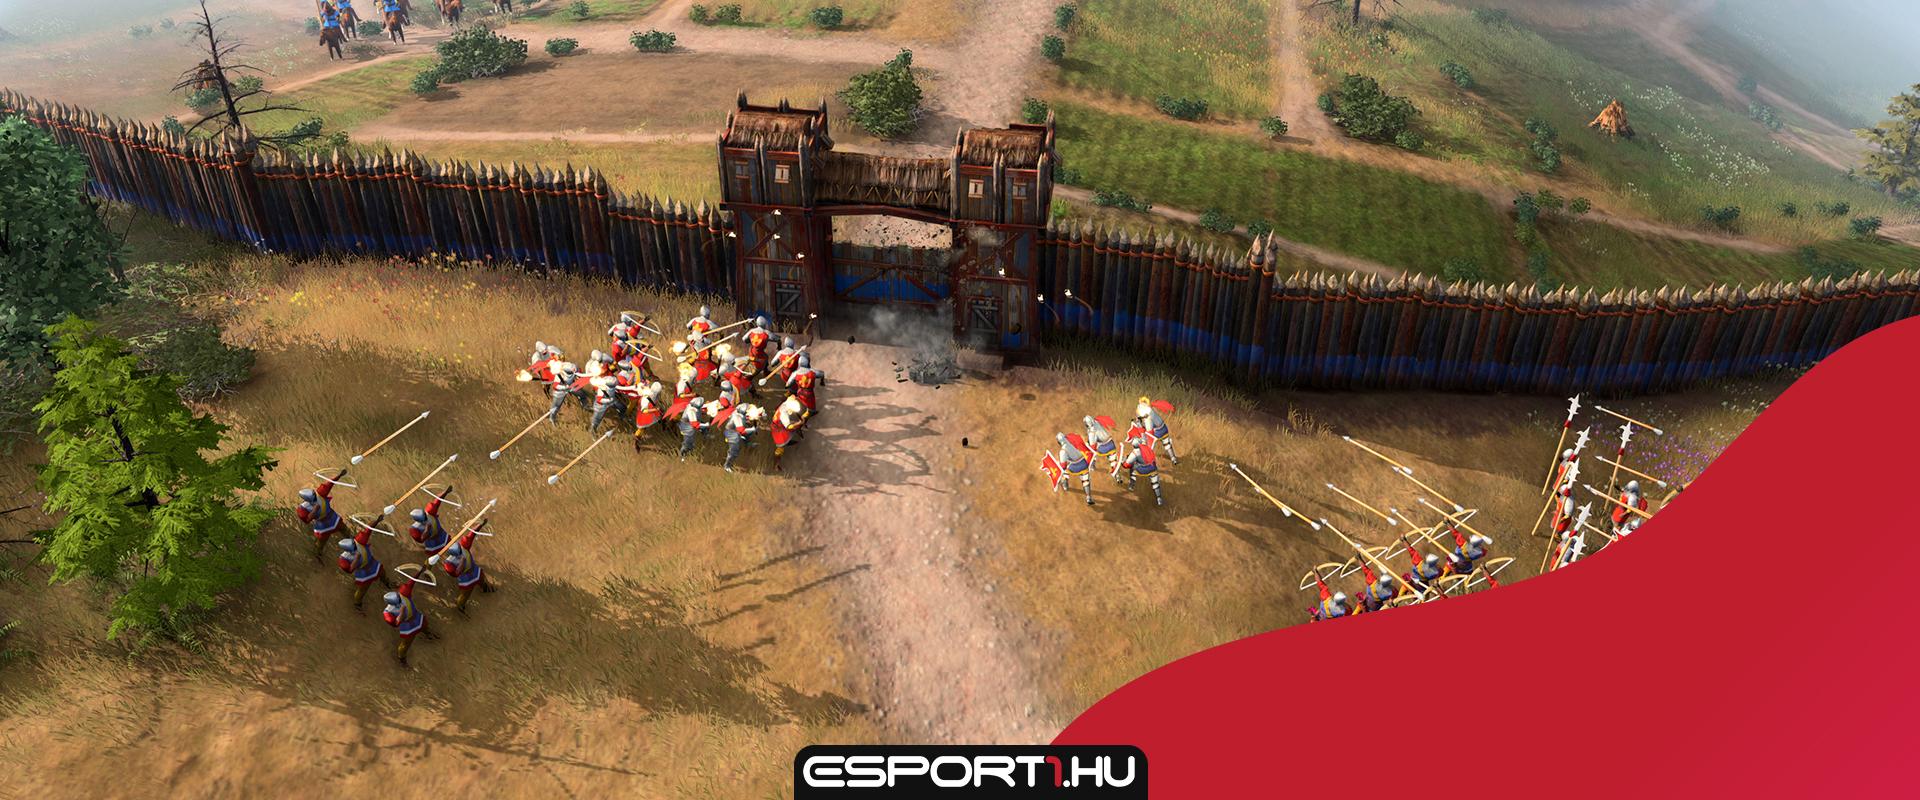 Nagy népszerűségnek örvend Steamen az Age of Empires 4